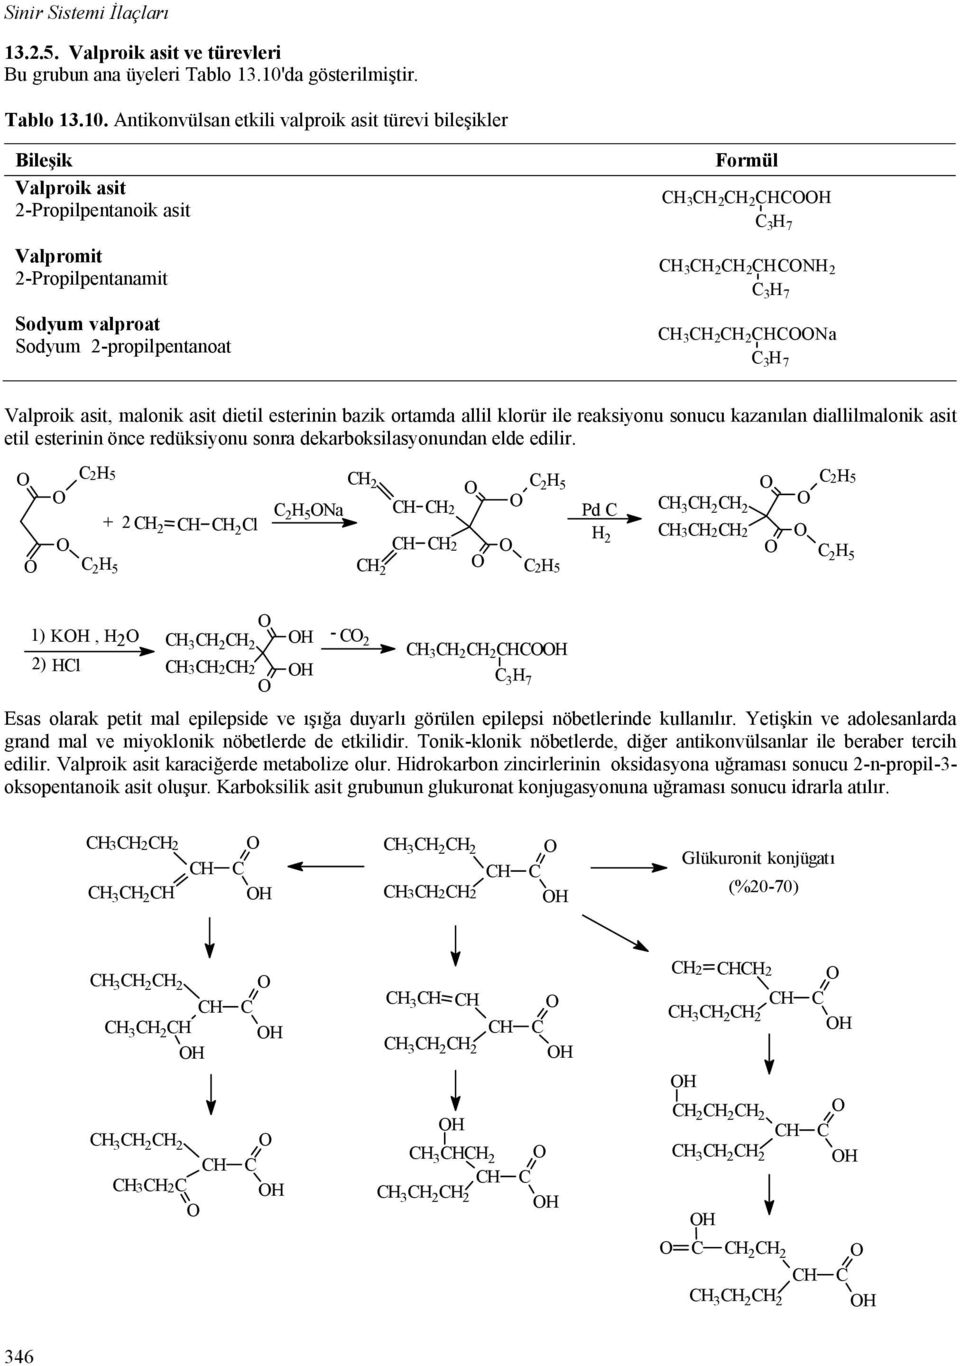 Antikonvülsan etkili valproik asit türevi bile ikler Bile ik Valproik asit 2-Propilpentanoik asit Valpromit 2-Propilpentanamit Sodyum valproat Sodyum 2-propilpentanoat Formül 2 2 7 2 2 2 7 2 2 a 7